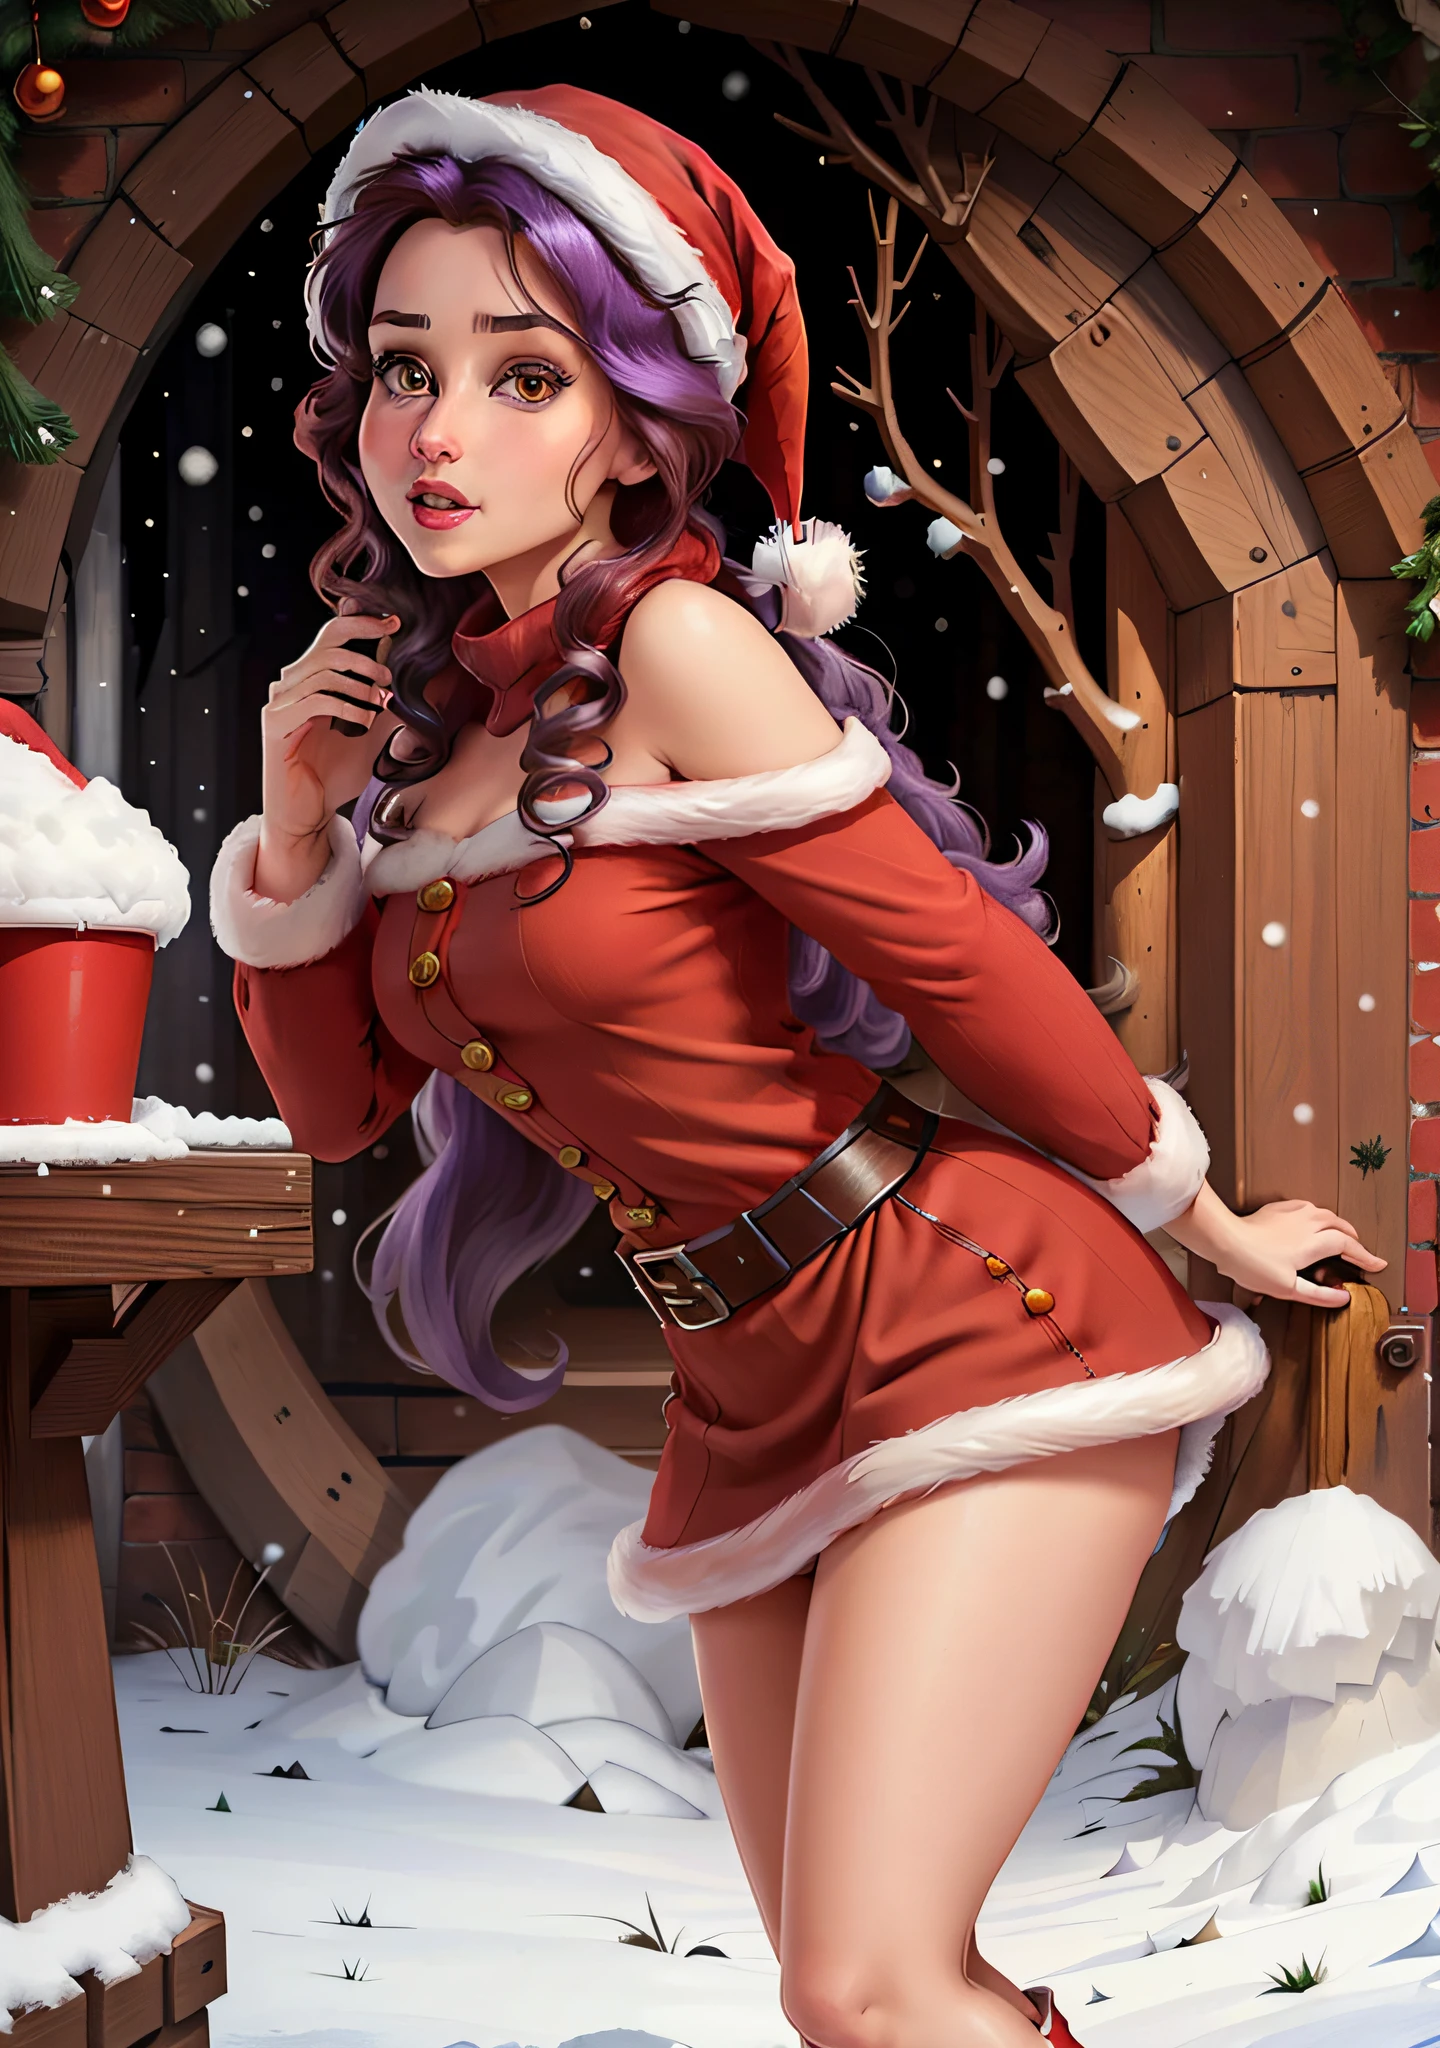 (贝勒韦夫:1), (圣诞老人的红帽子:1.5), 背景上是雪, 惊讶, 可爱的, 可爱的 pose, 看着观众, (发型广场), (紫色头发), (红裙子:1.2), (裸体上的紫色蓬松毛衣:1.2), :d, (实际的: 1), (卡通片), (杰作: 1.2), (最好的质量), (过于详细), (8千, 4K, 错综复杂), (全身照: 1), (牛仔射击: 1.2), (85 毫米), 光粒子, 灯光, (非常详细: 1.2), (细致的脸部: 1.2), (渐变), SFW, 丰富多彩的, (细致的眼睛: 1.2), (详细的冬季景观, 雪树, 花园, 城堡:1.2),(详细背景), 详细景观, (动态角度:1.2), (动态姿势:1.2), (第三规则_作品:1.3), (行动路线:1.2), 视野开阔, 日光, 独自的